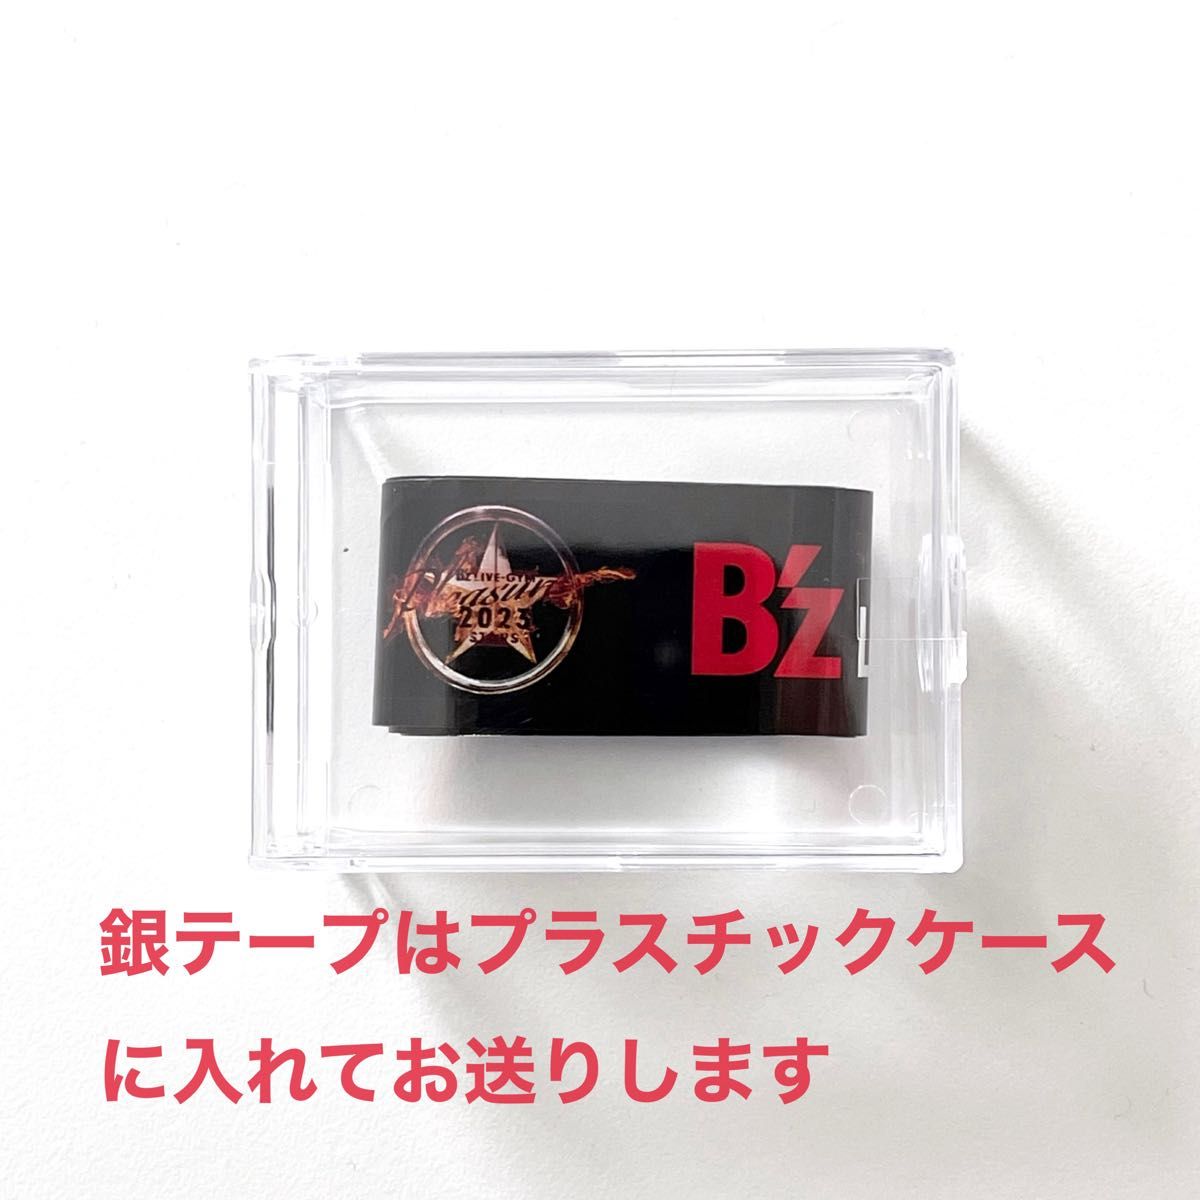 B'z ビーズ Premium席 限定グッズ 銀テープ リストバンド付き